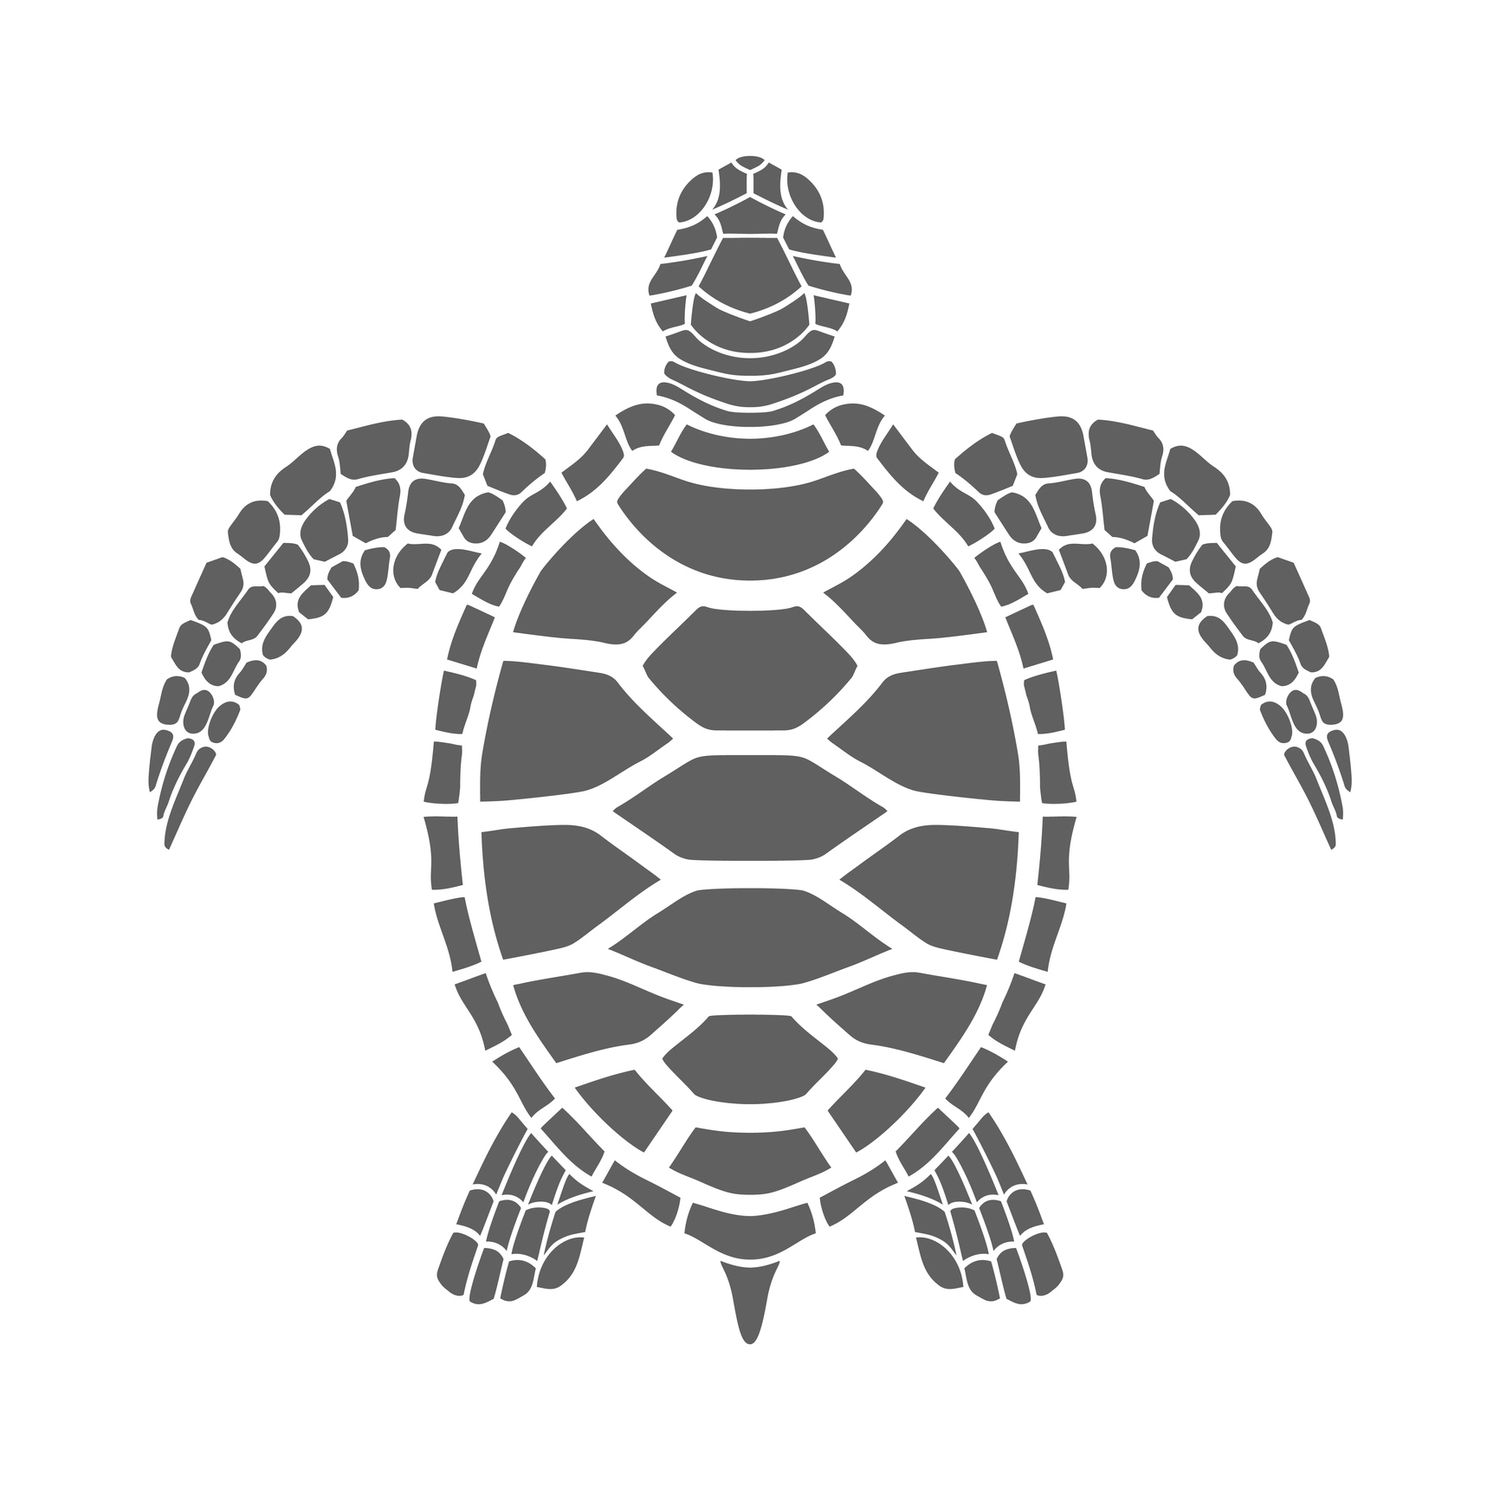 Icono tortuga marina. Símbolo gris aislado sobre fondo blanco.